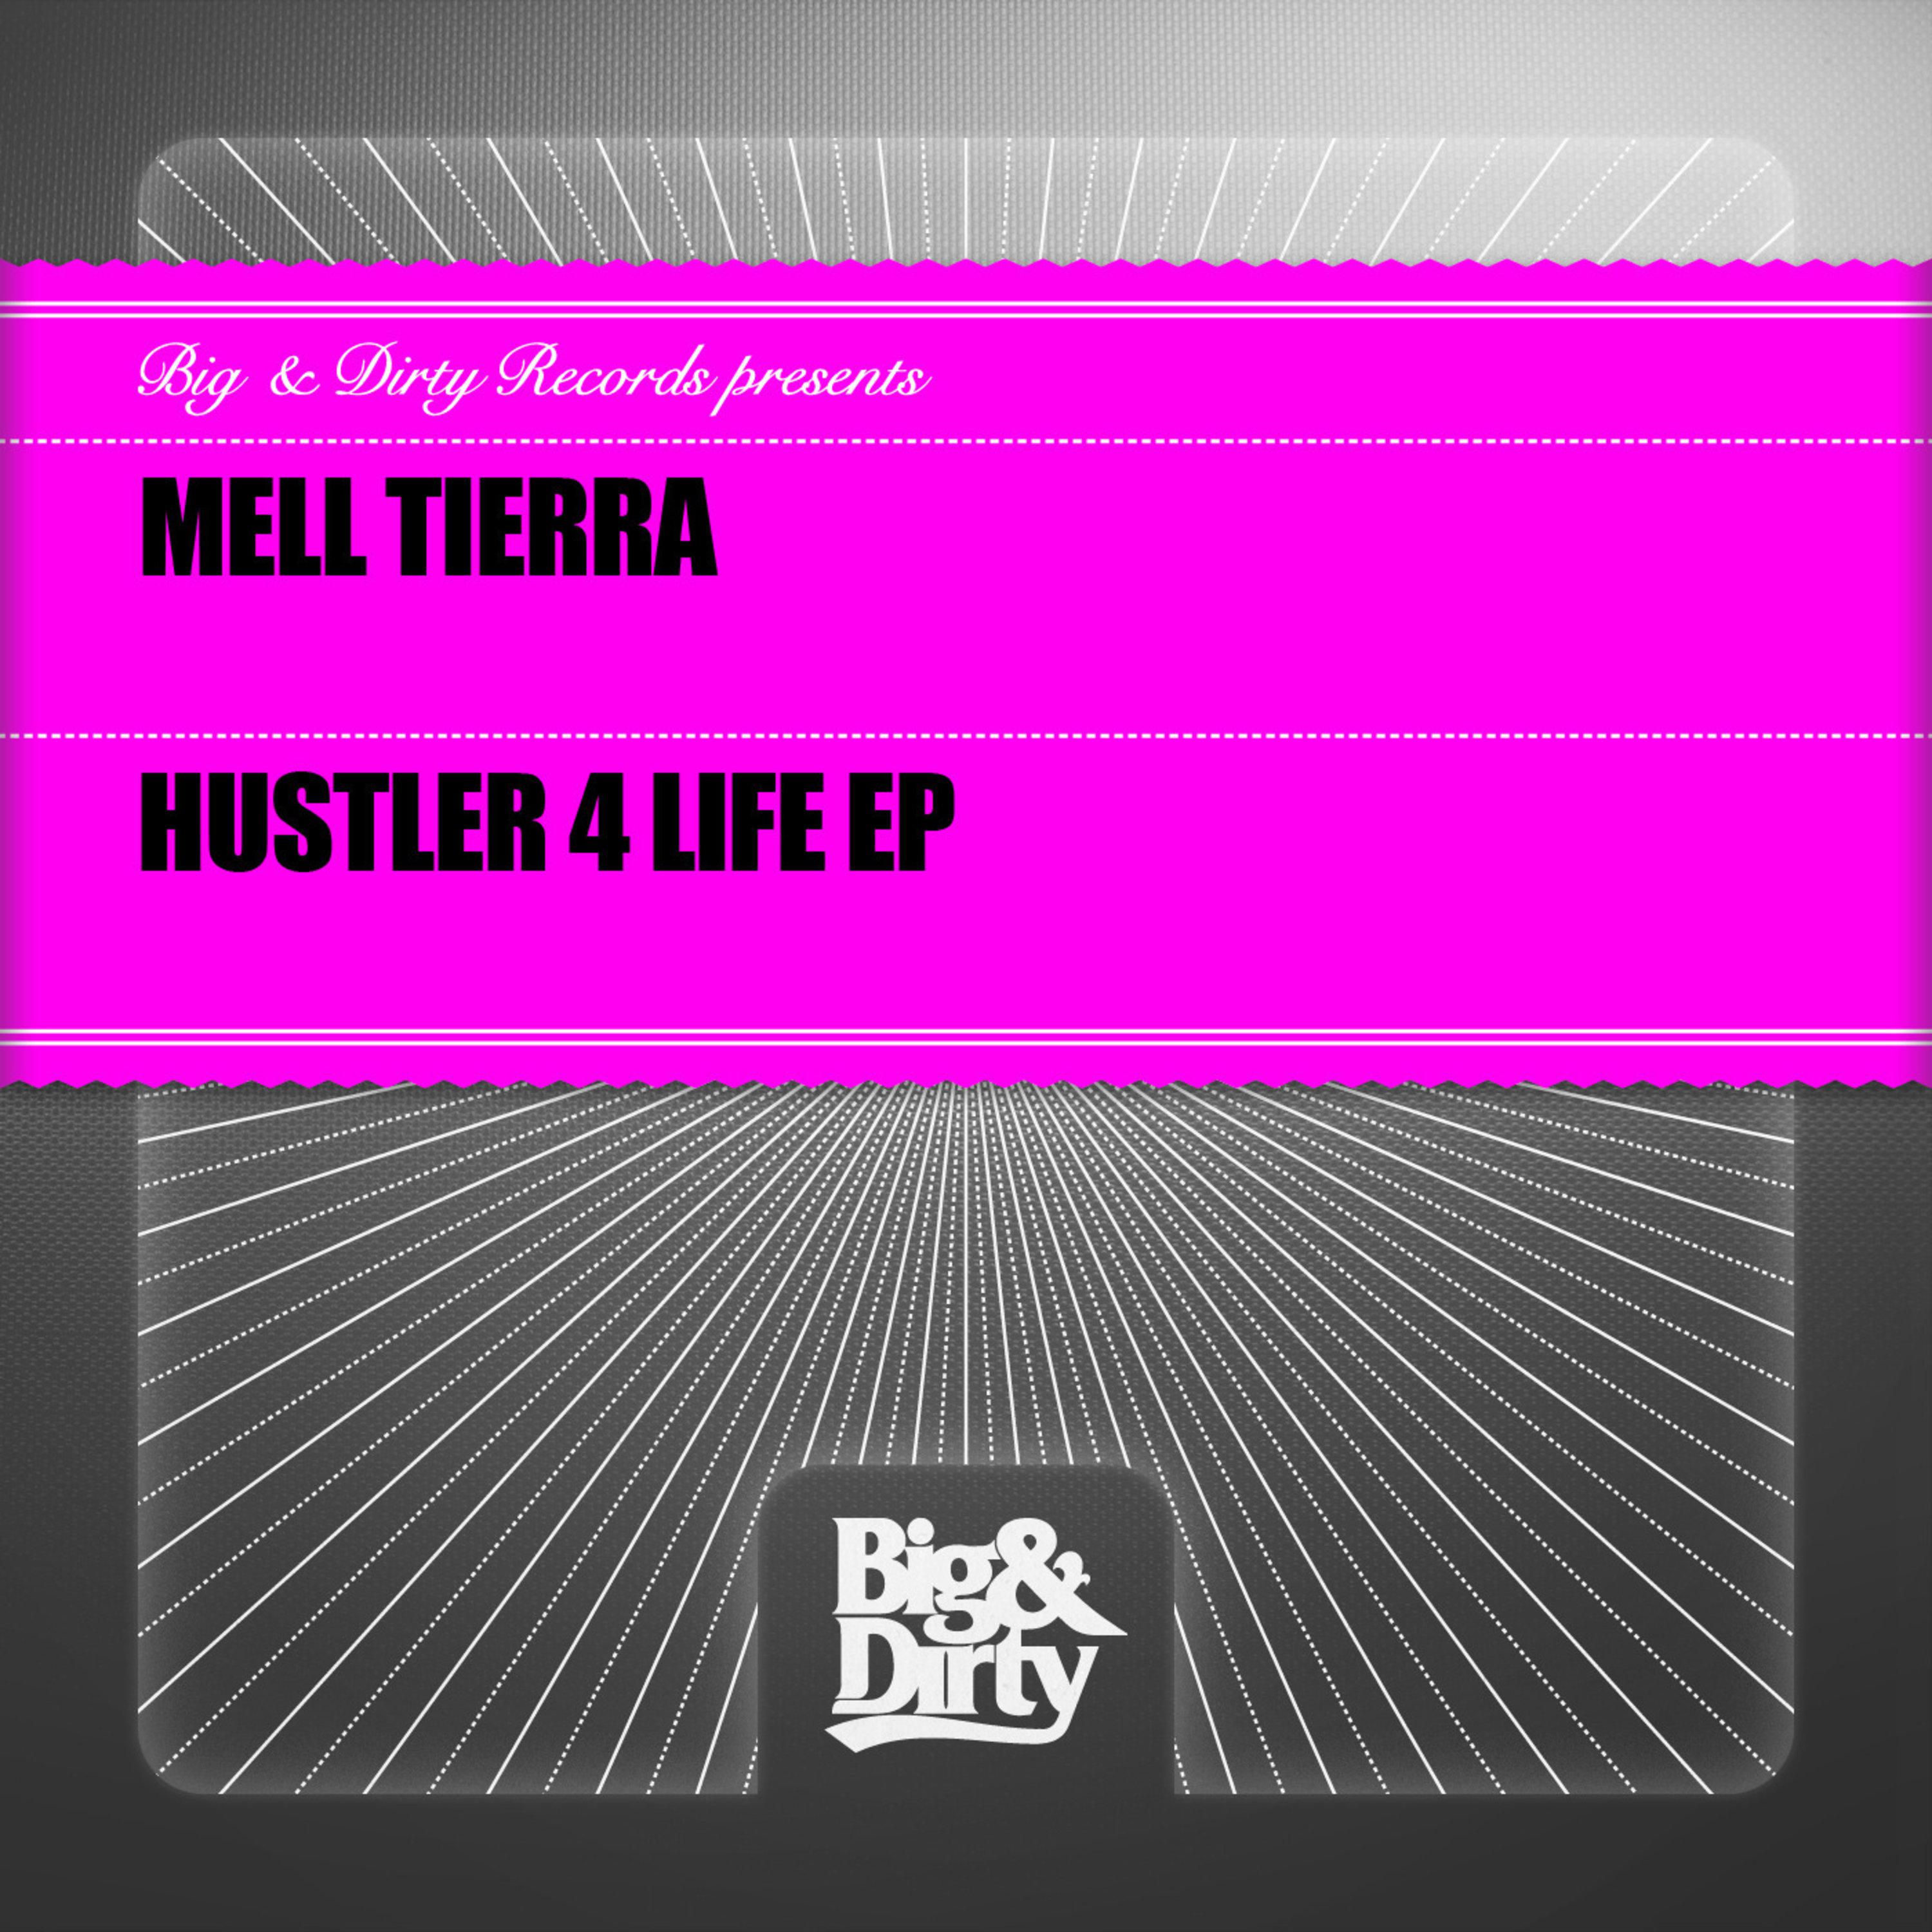 Hustler 4 Life EP